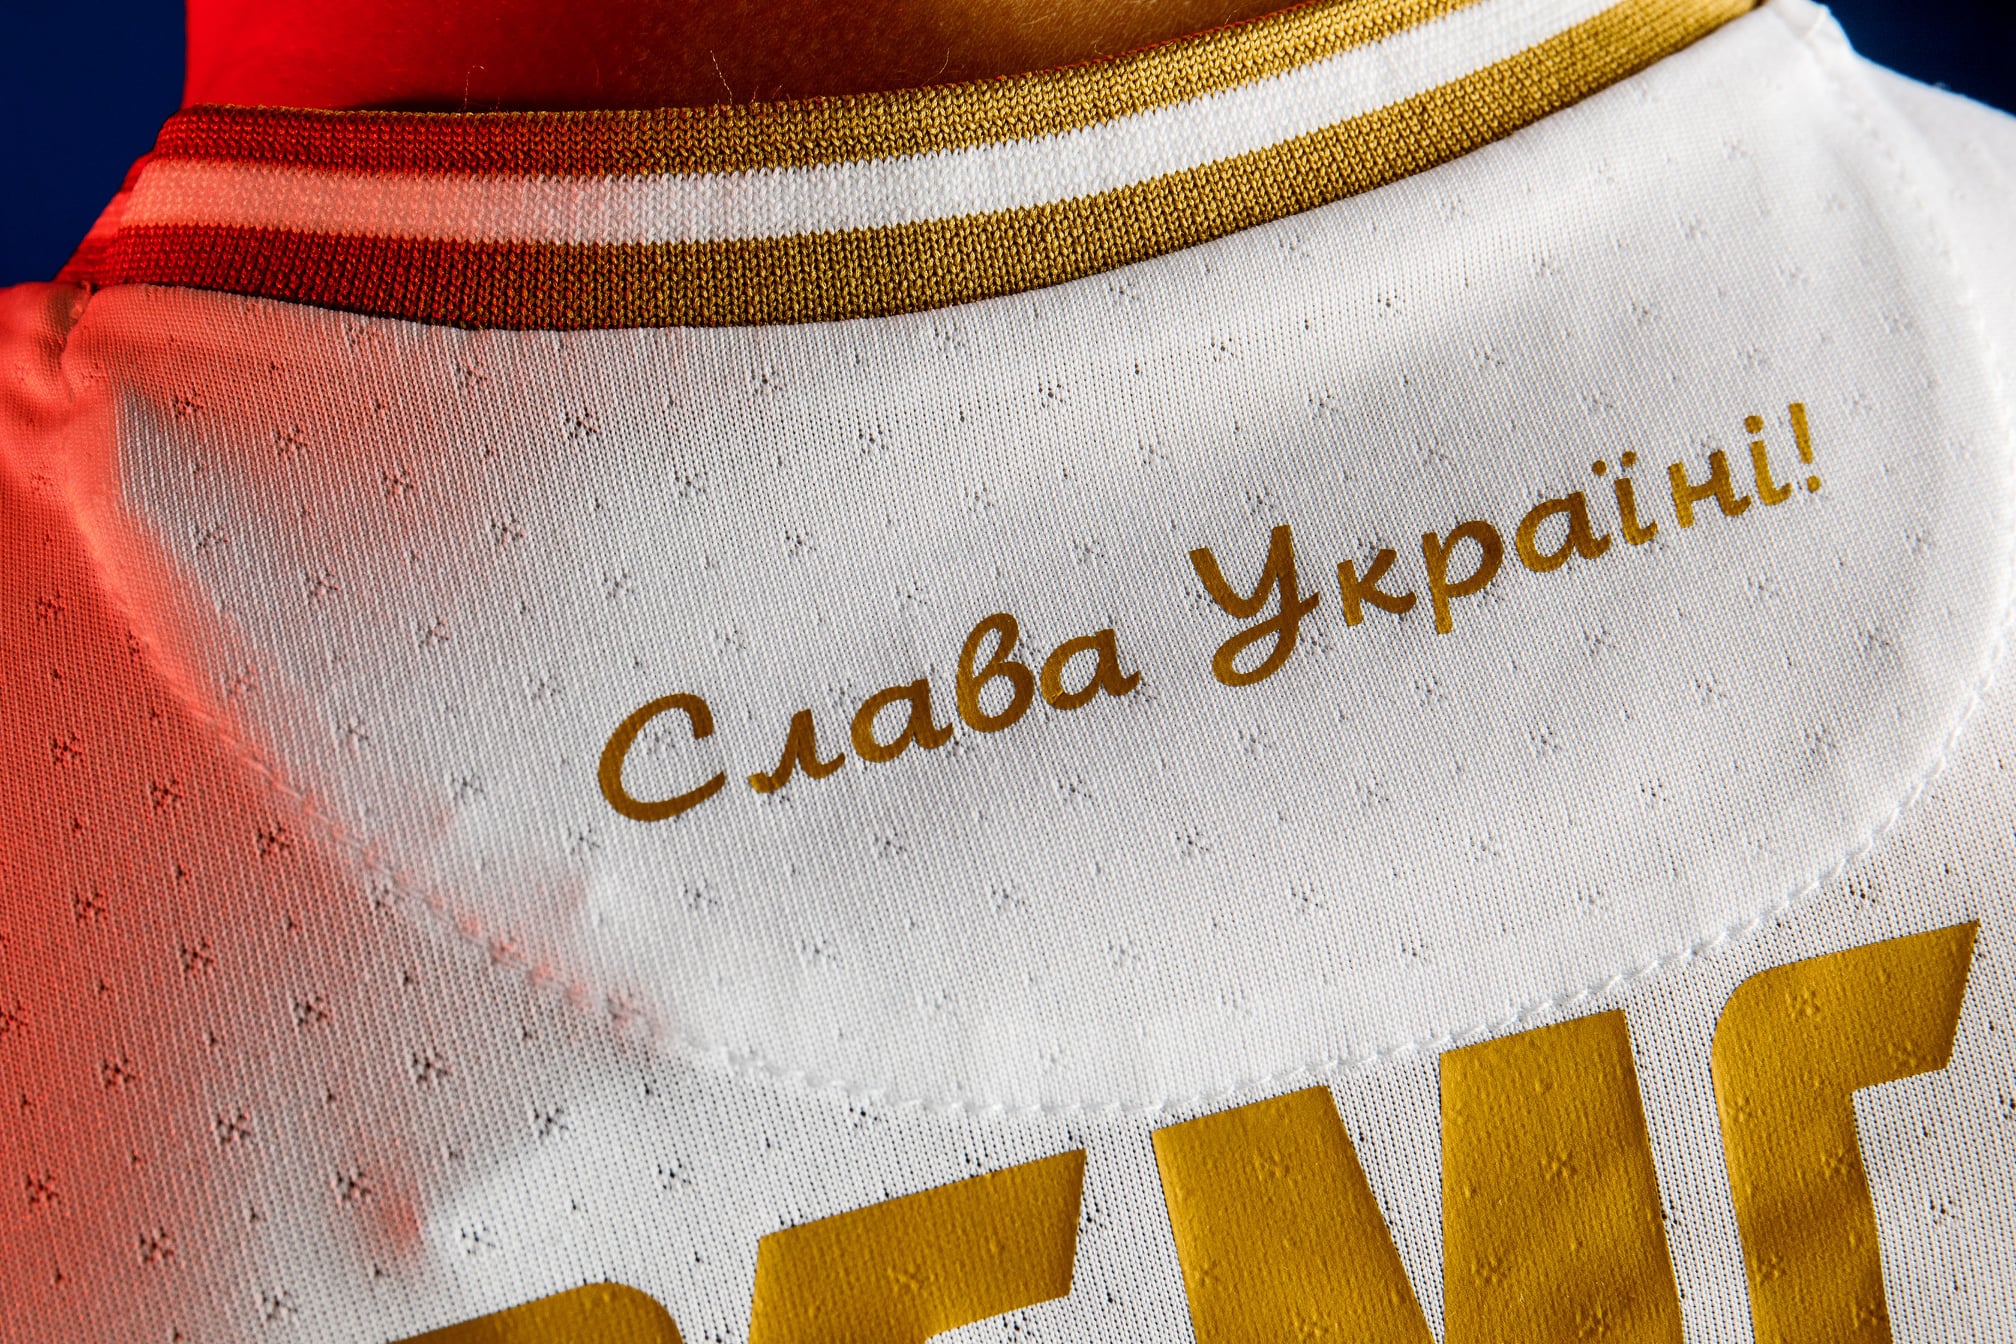 Україна представила спортивну форму збірної з футболу. У Росії обурились